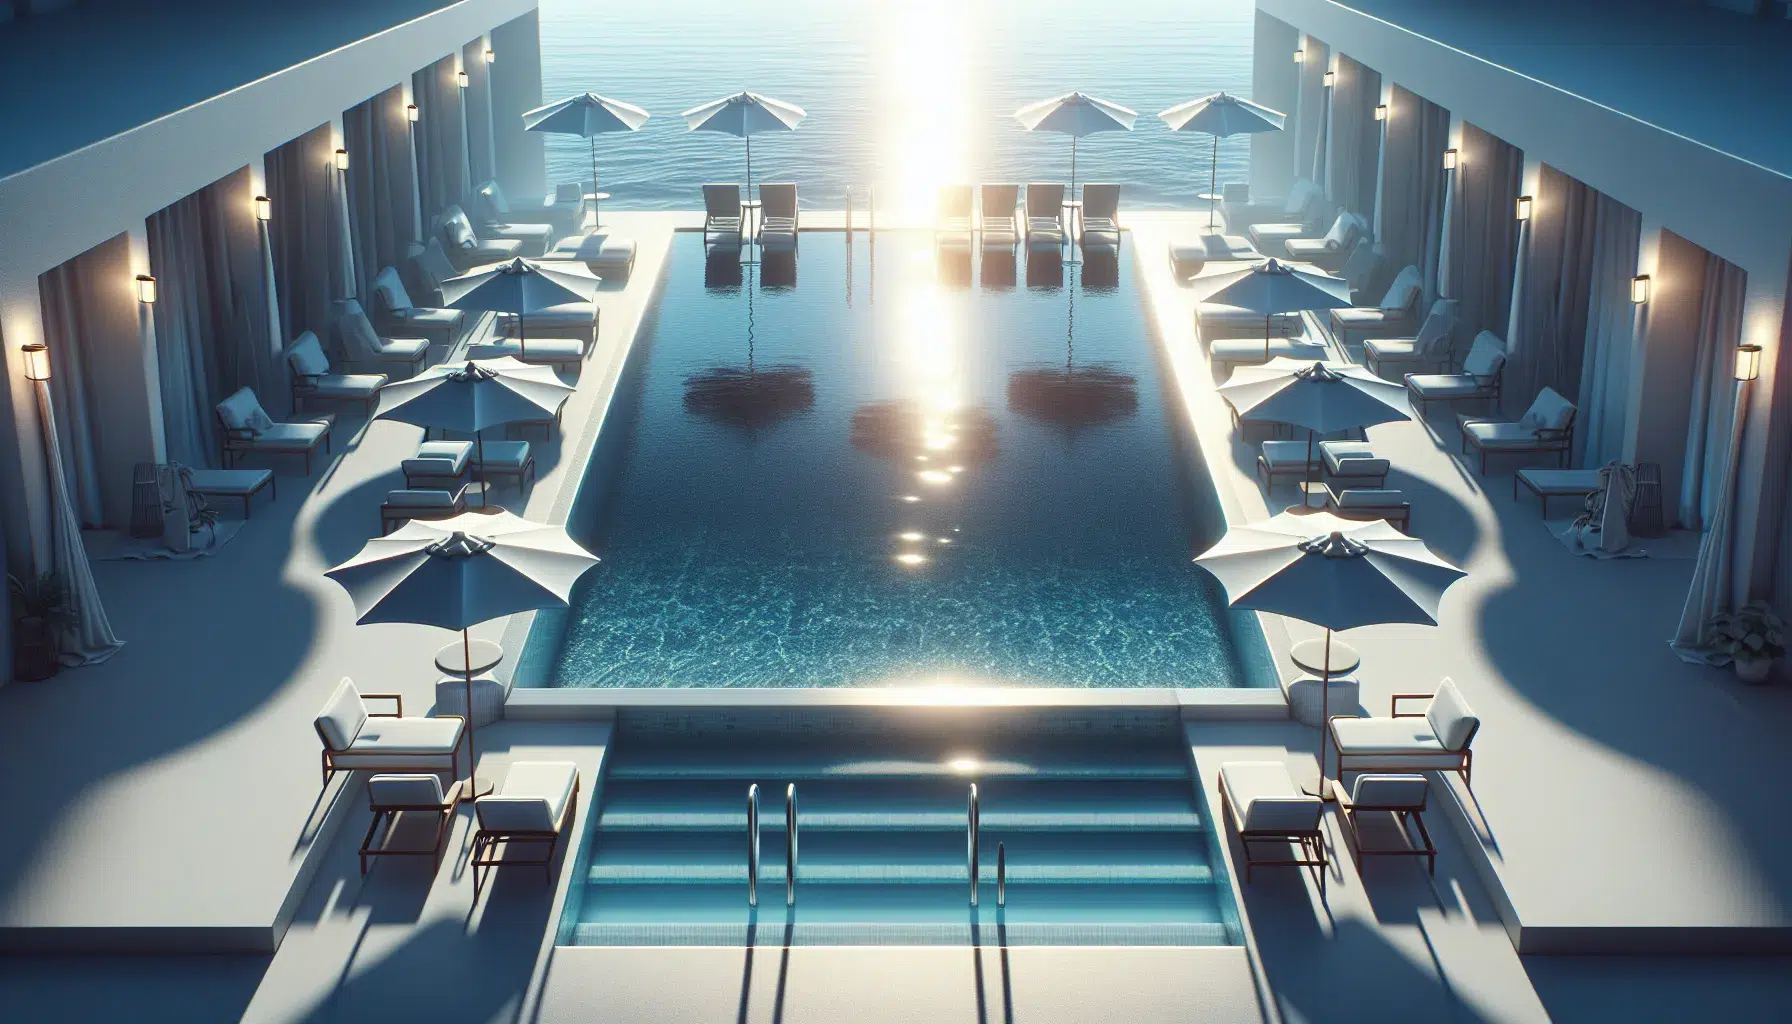 Imagen de una piscina cristalina con sillas y sombrillas alrededor, lista para disfrutar del verano